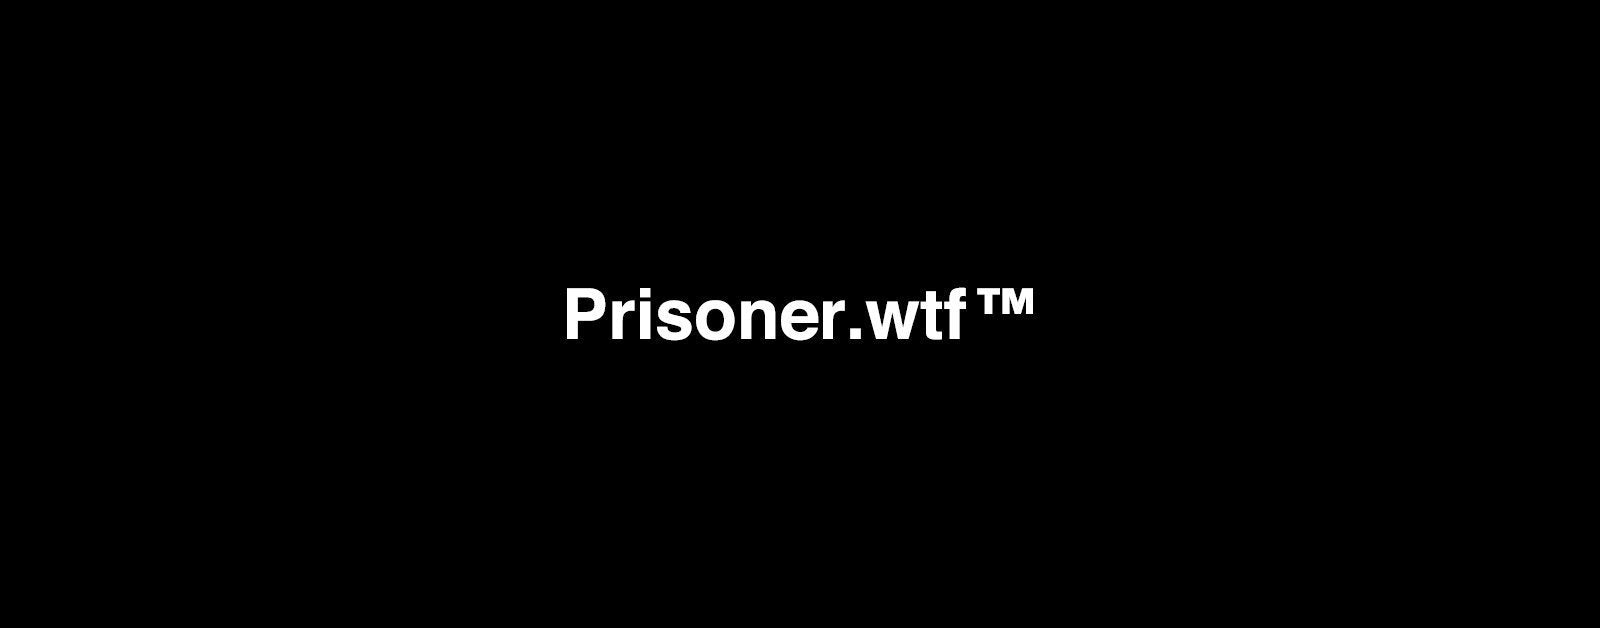 Prisoner.wtf™